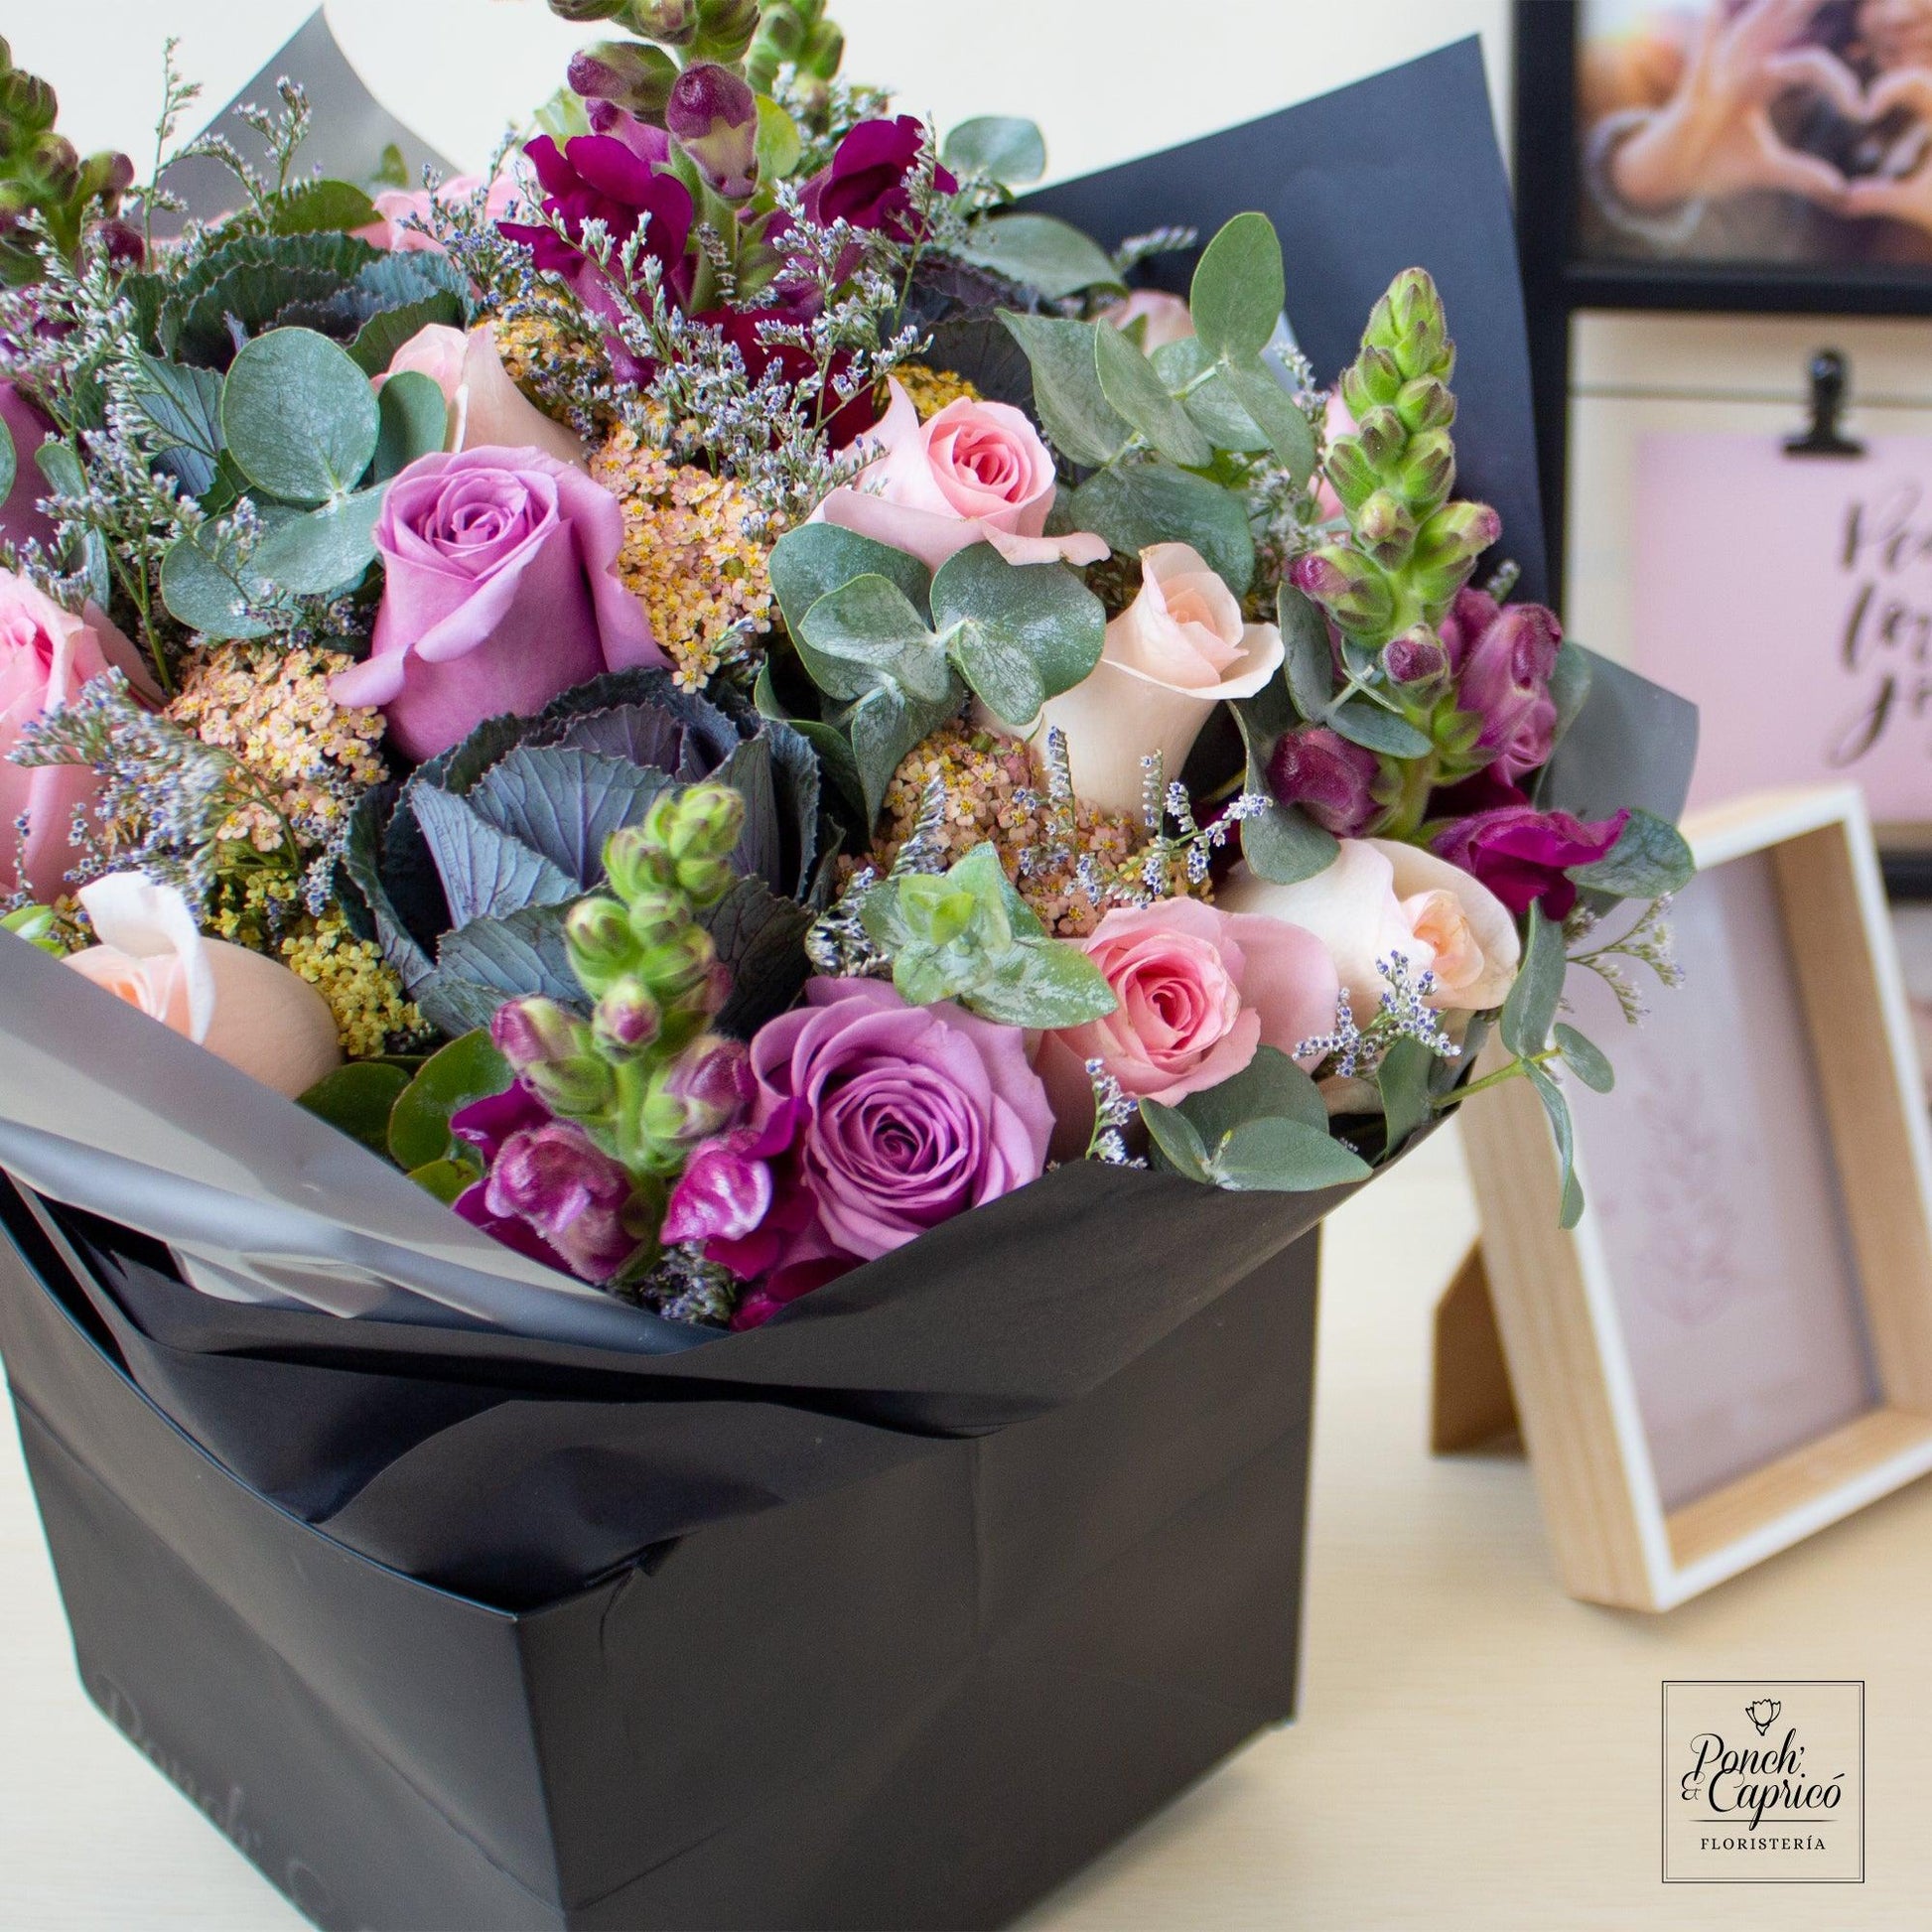 Bouquet de Mix Lila y Rosa con Rosas, Eucalipto, Limonio y Aquilea